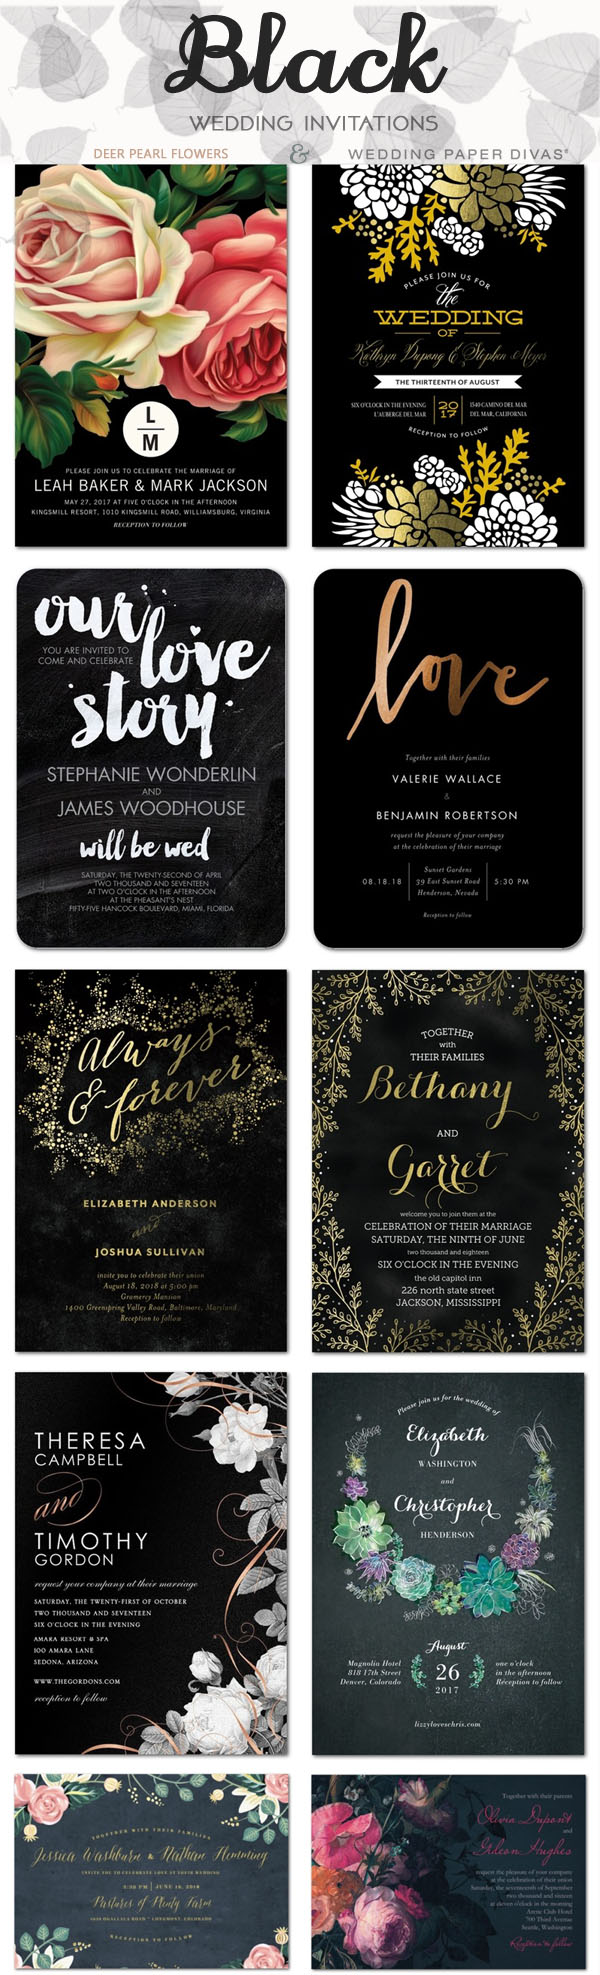 Black wedding color ideas - black wedding invitations